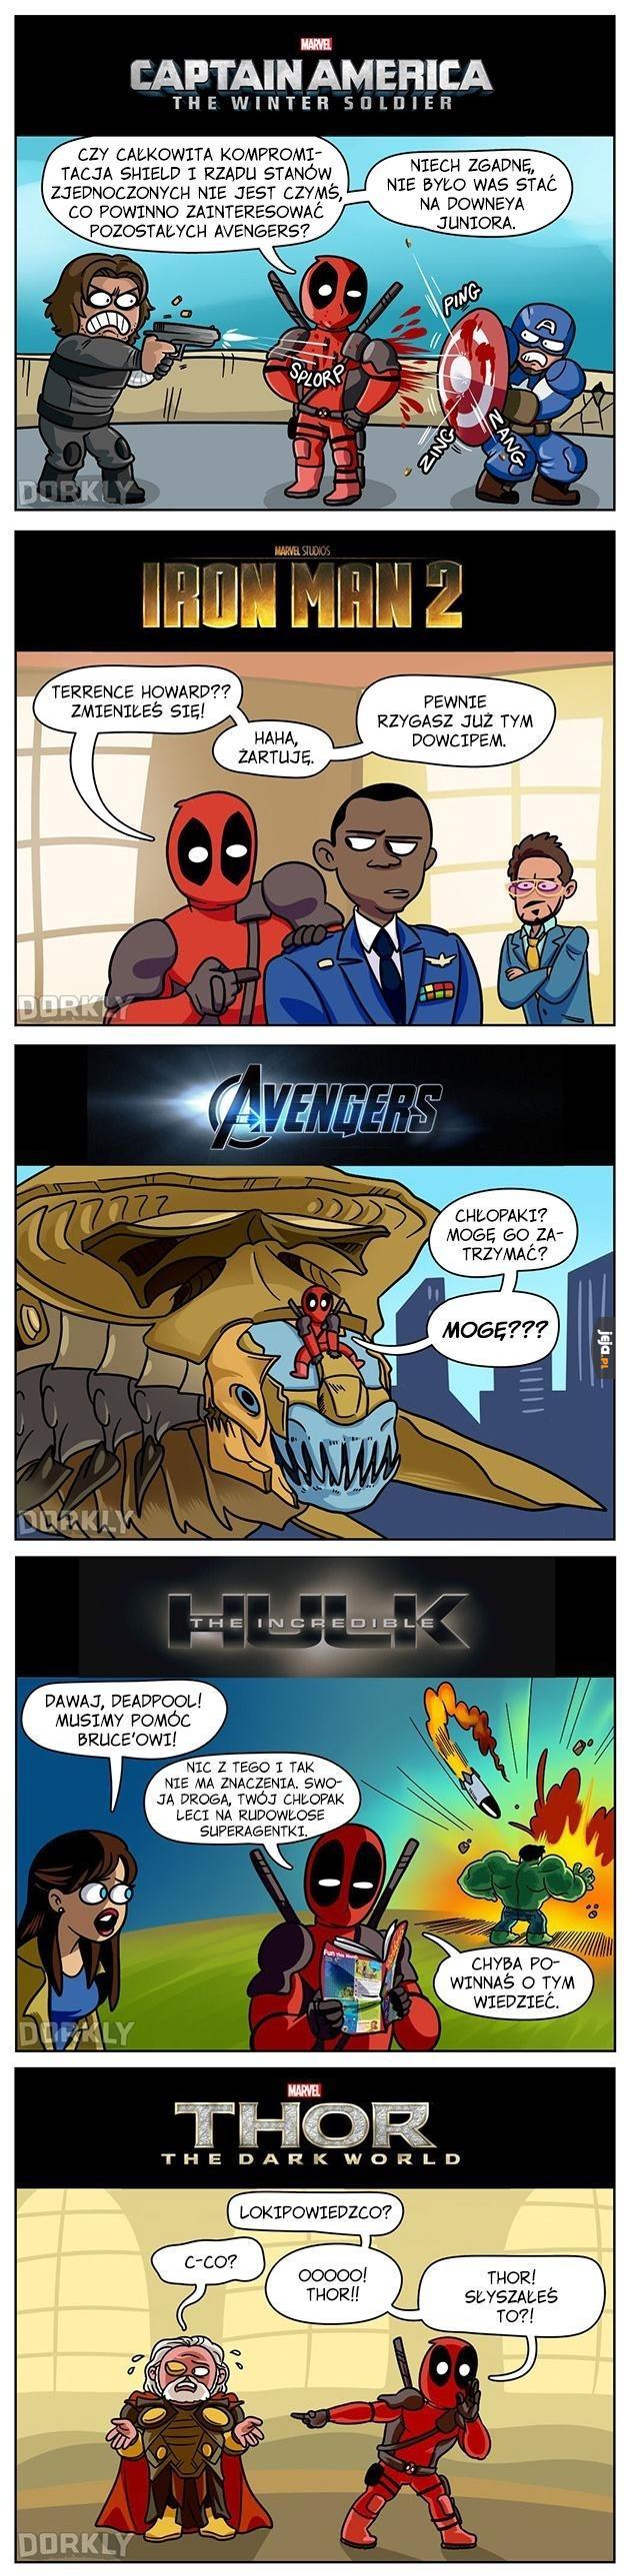 Gdyby Deadpool wystąpił w innych filmach Marvela